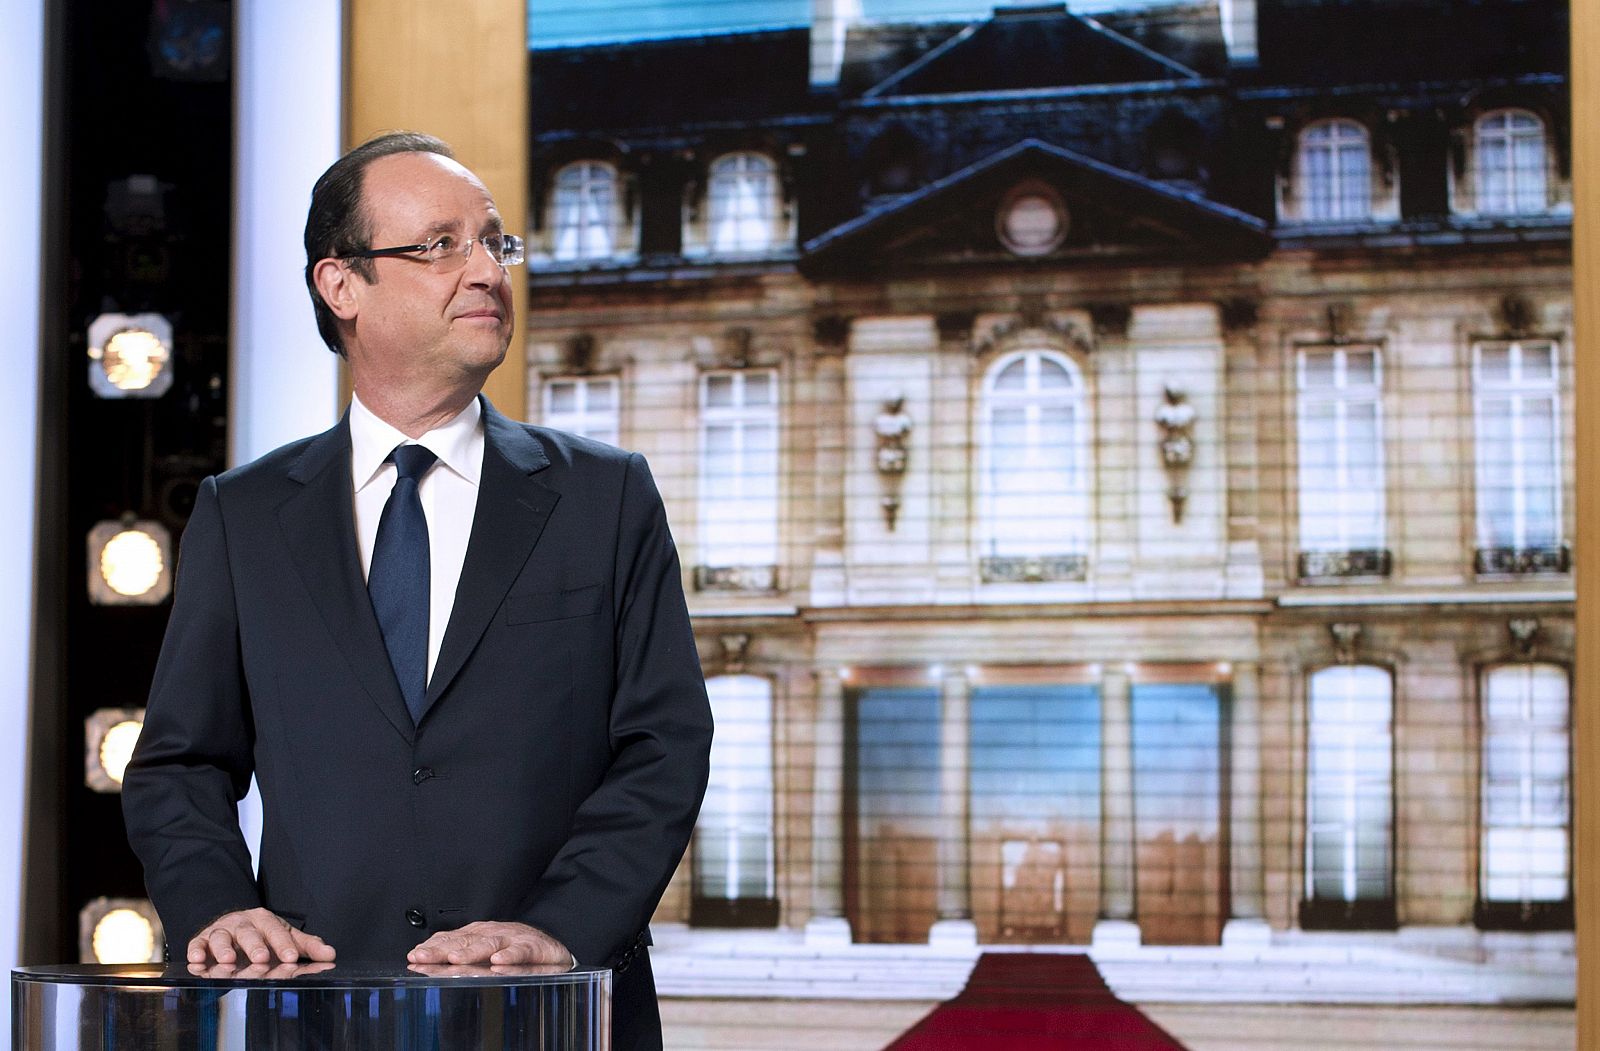 El candidato del Partido Socialista , durante una televisiva en el programa "Palabras con Candidatos", del canal de televisión TF1.